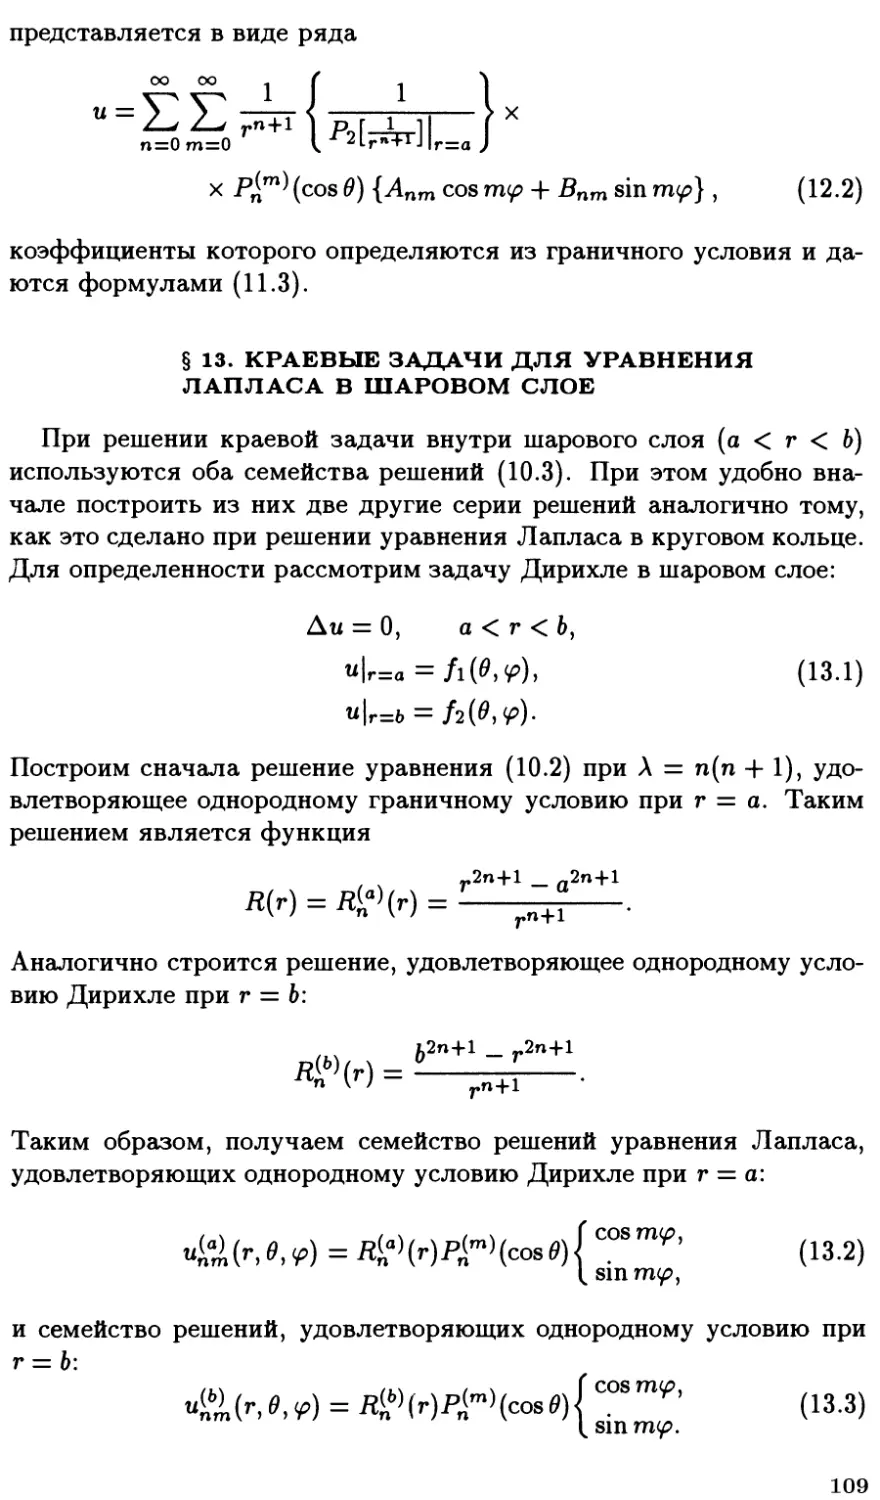 §13. Краевые задачи для уравнения Лапласа в шаровом слое